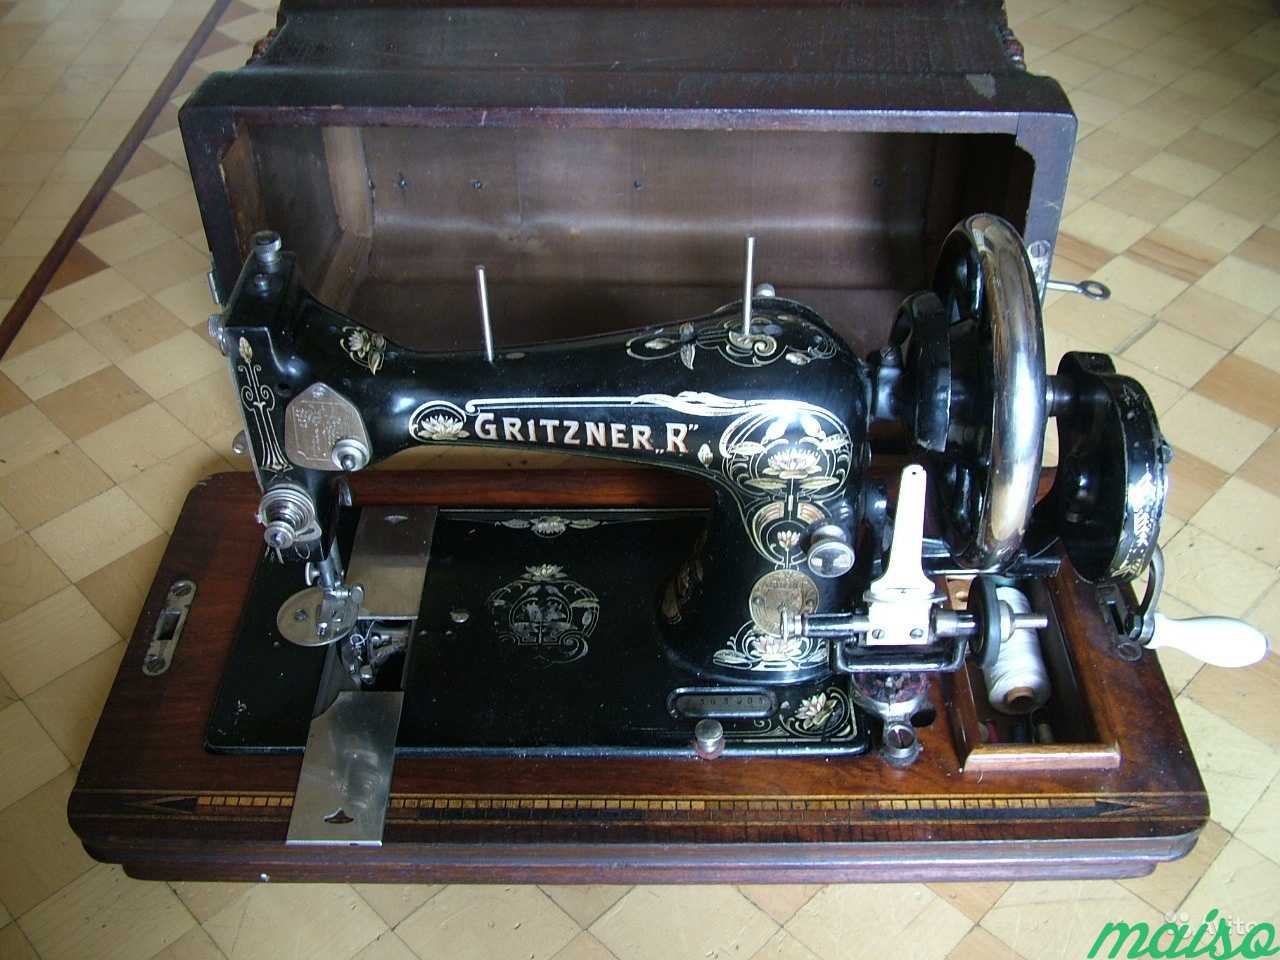 Авито старые швейные машинки. Швейная машина Gritzner. Машинка Gritzner швейная 2m071666. Швейная машинка Gritzner Durlach 3555031. Швейная машинка Gritzner электрическая.